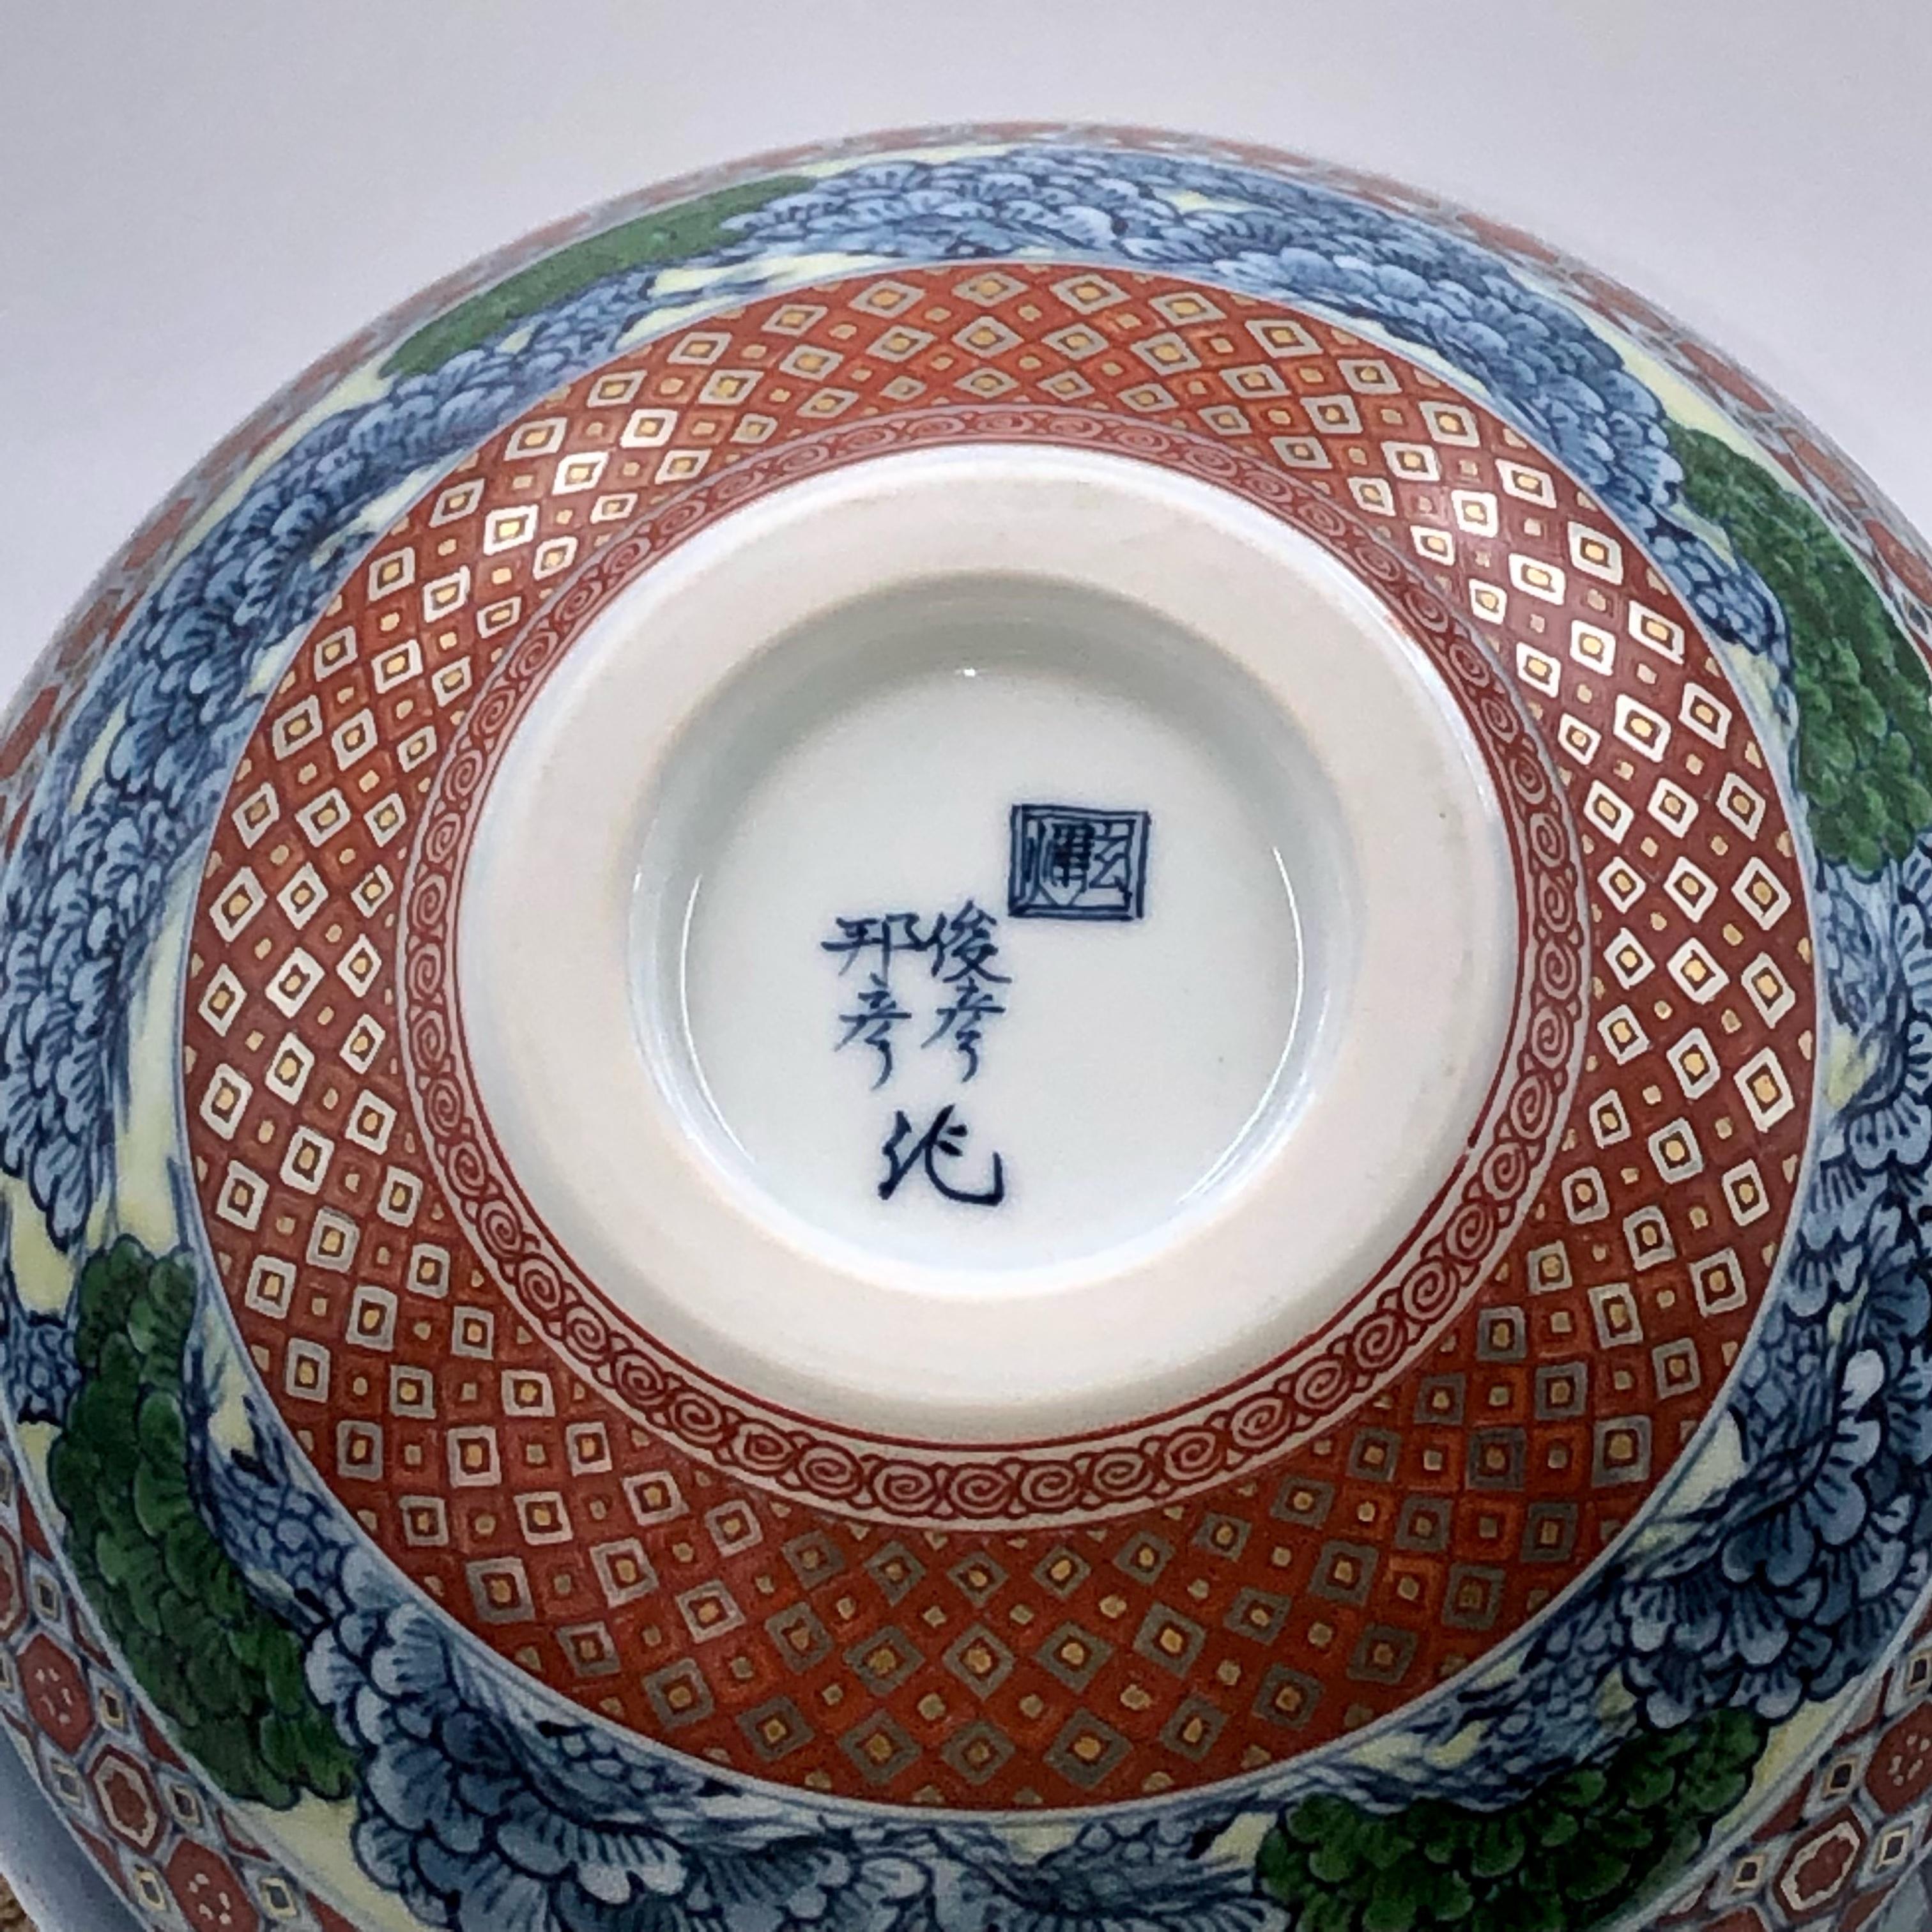 Extraordinaire vase contemporain japonais en porcelaine décorative de qualité muséale. Ce chef-d'œuvre est l'œuvre de la Collaboration de deux frères et est signé par les deux, des maîtres artistes en porcelaine de la deuxième génération de la